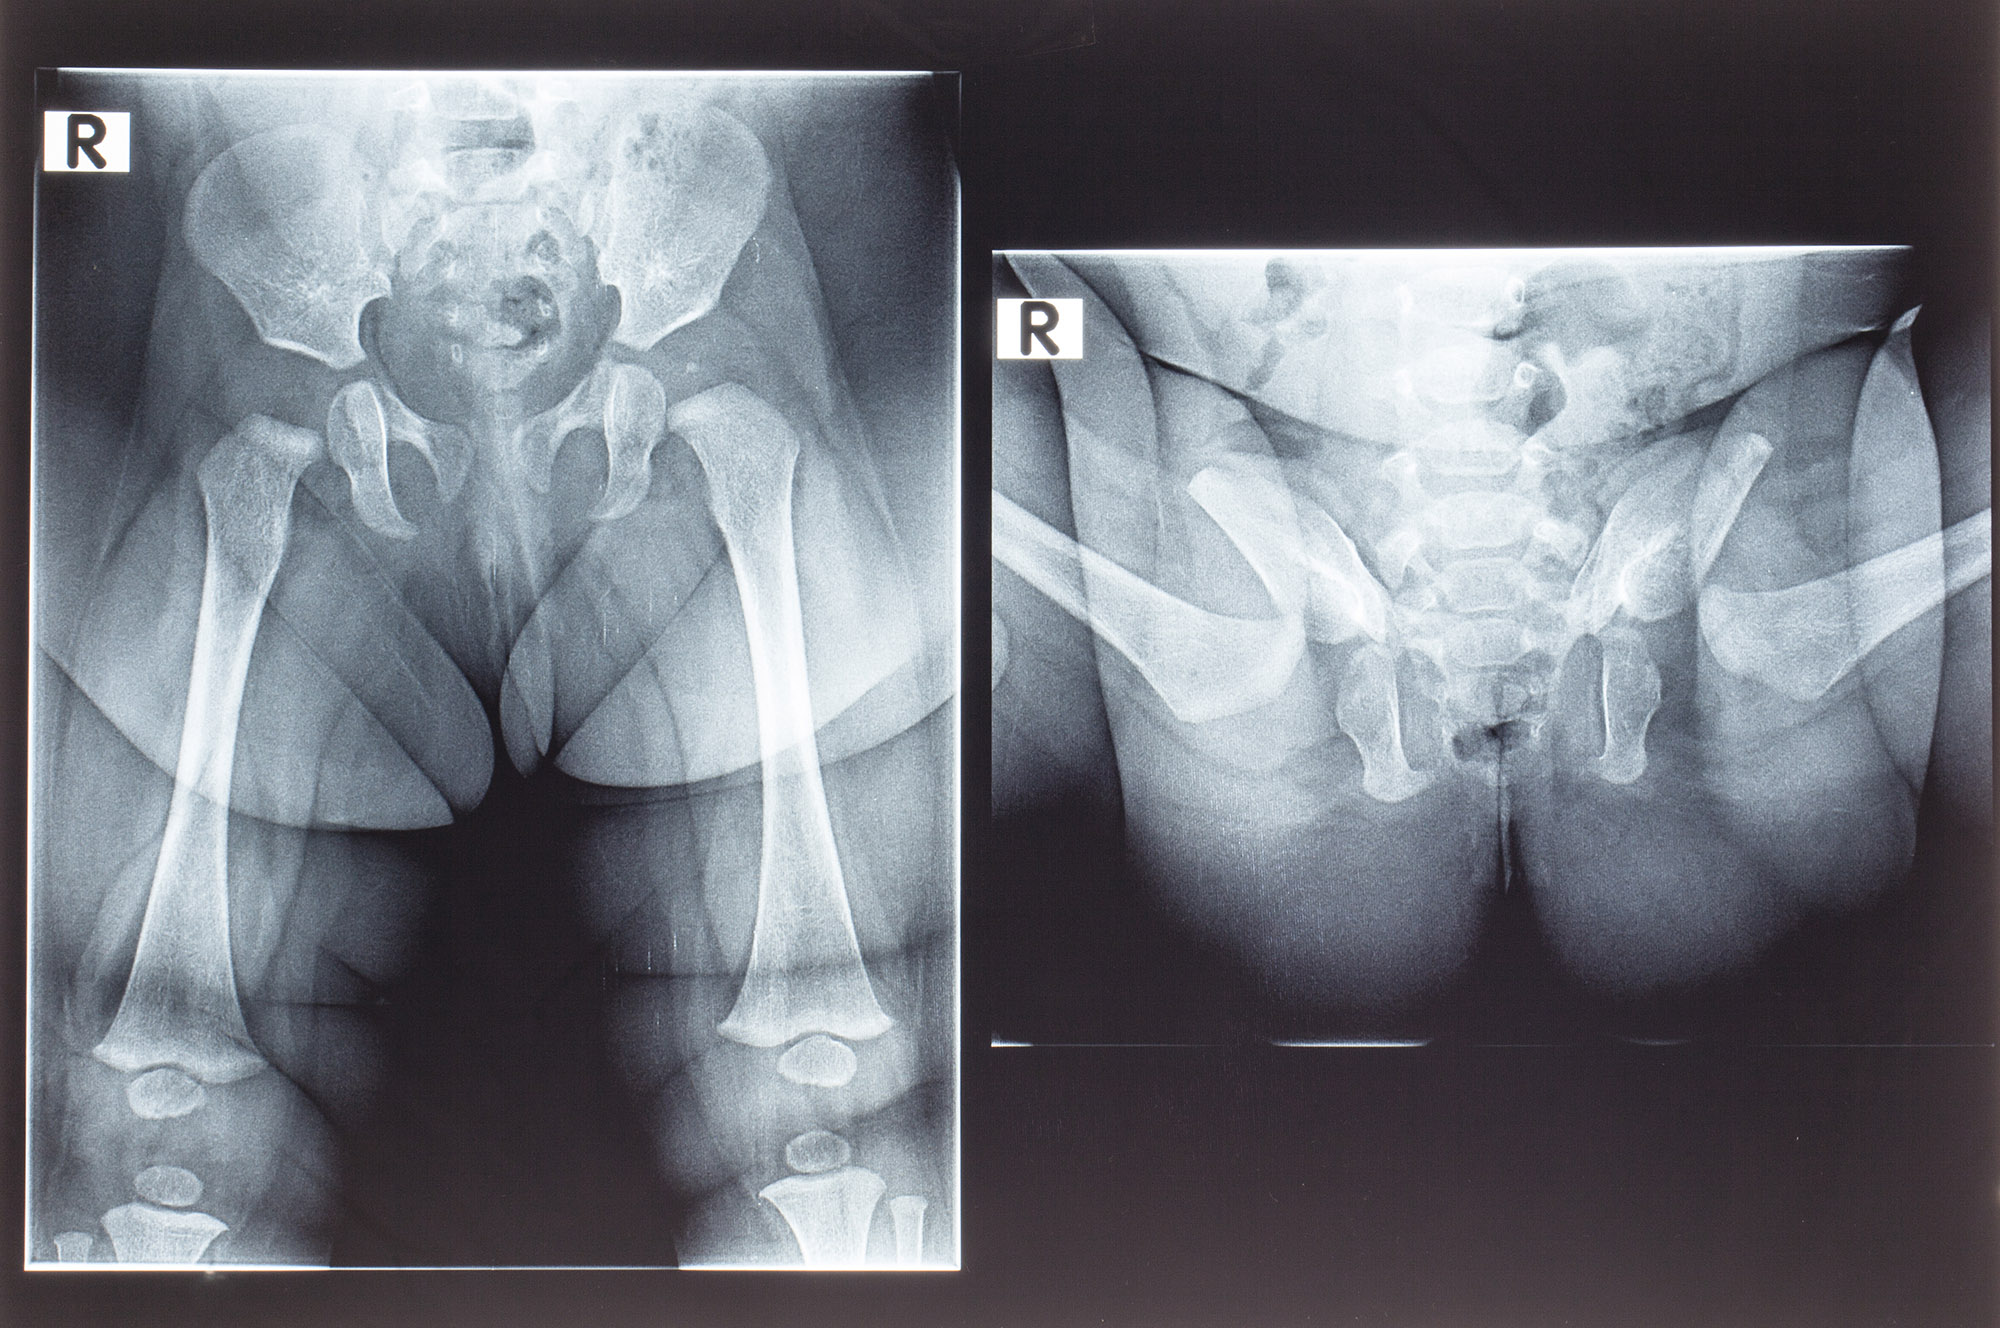 Рентген тазобедренных суставов у детей. Норма